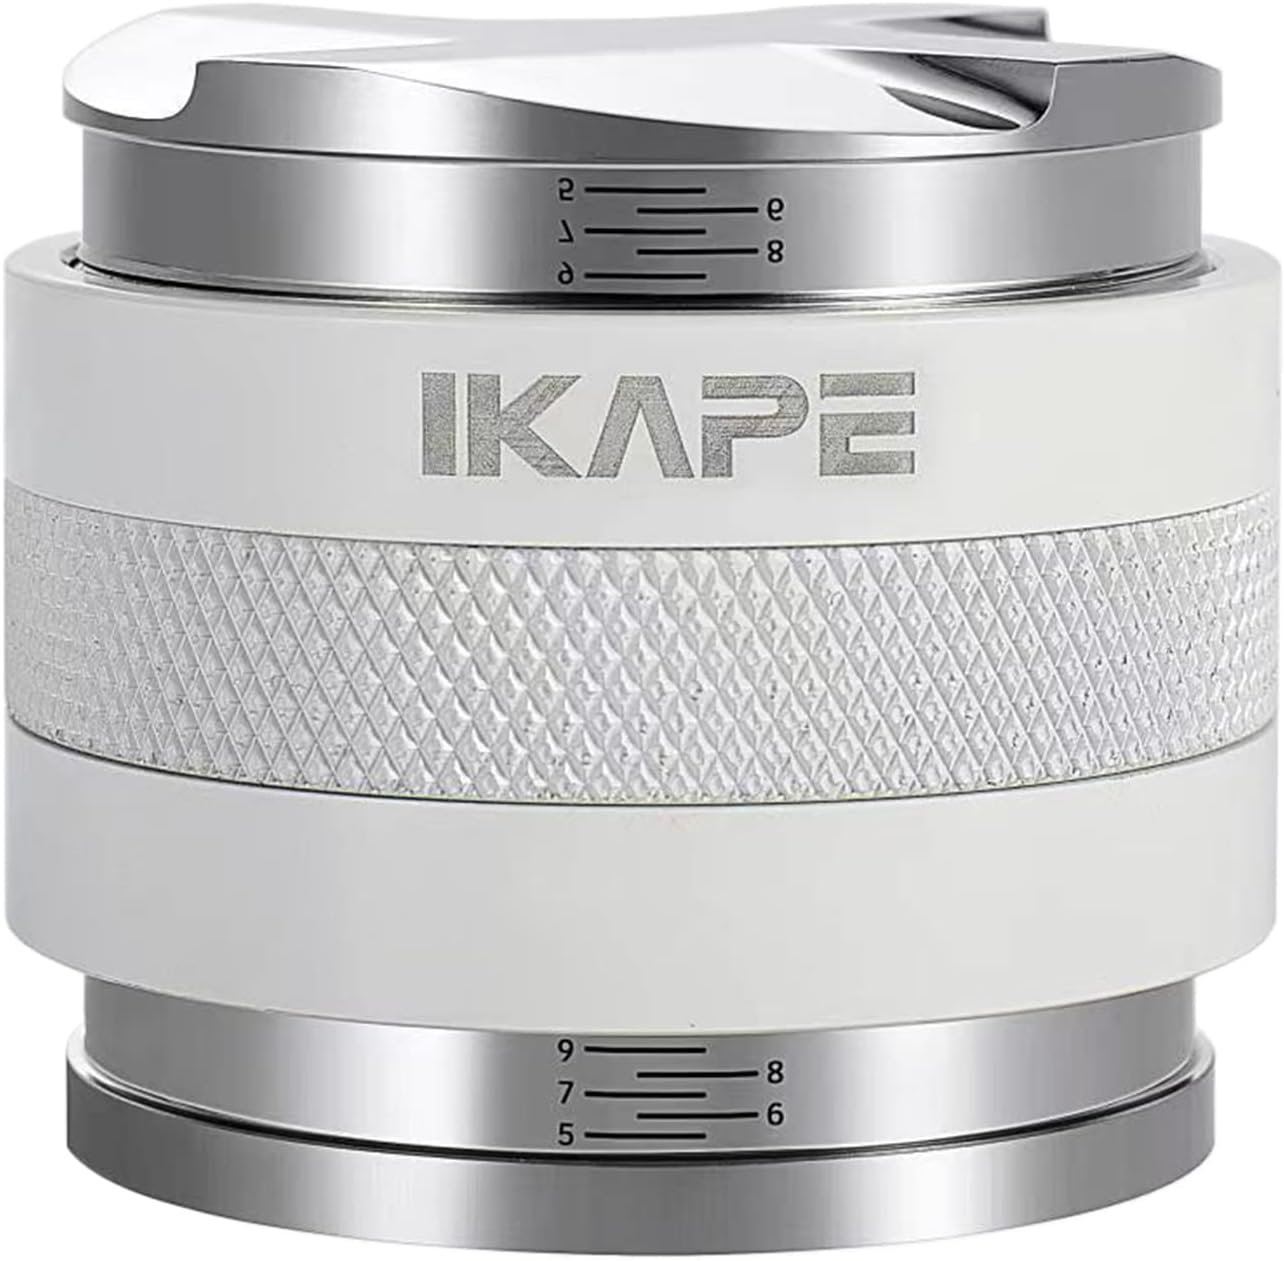 IKAPE 2 in 1 Distributor & Tamper ที่เกลี่ยผงกาแฟและแทมเปอร์ สีขาว 2in1 ขนาด 51 / 53.30 / 58.5 mm